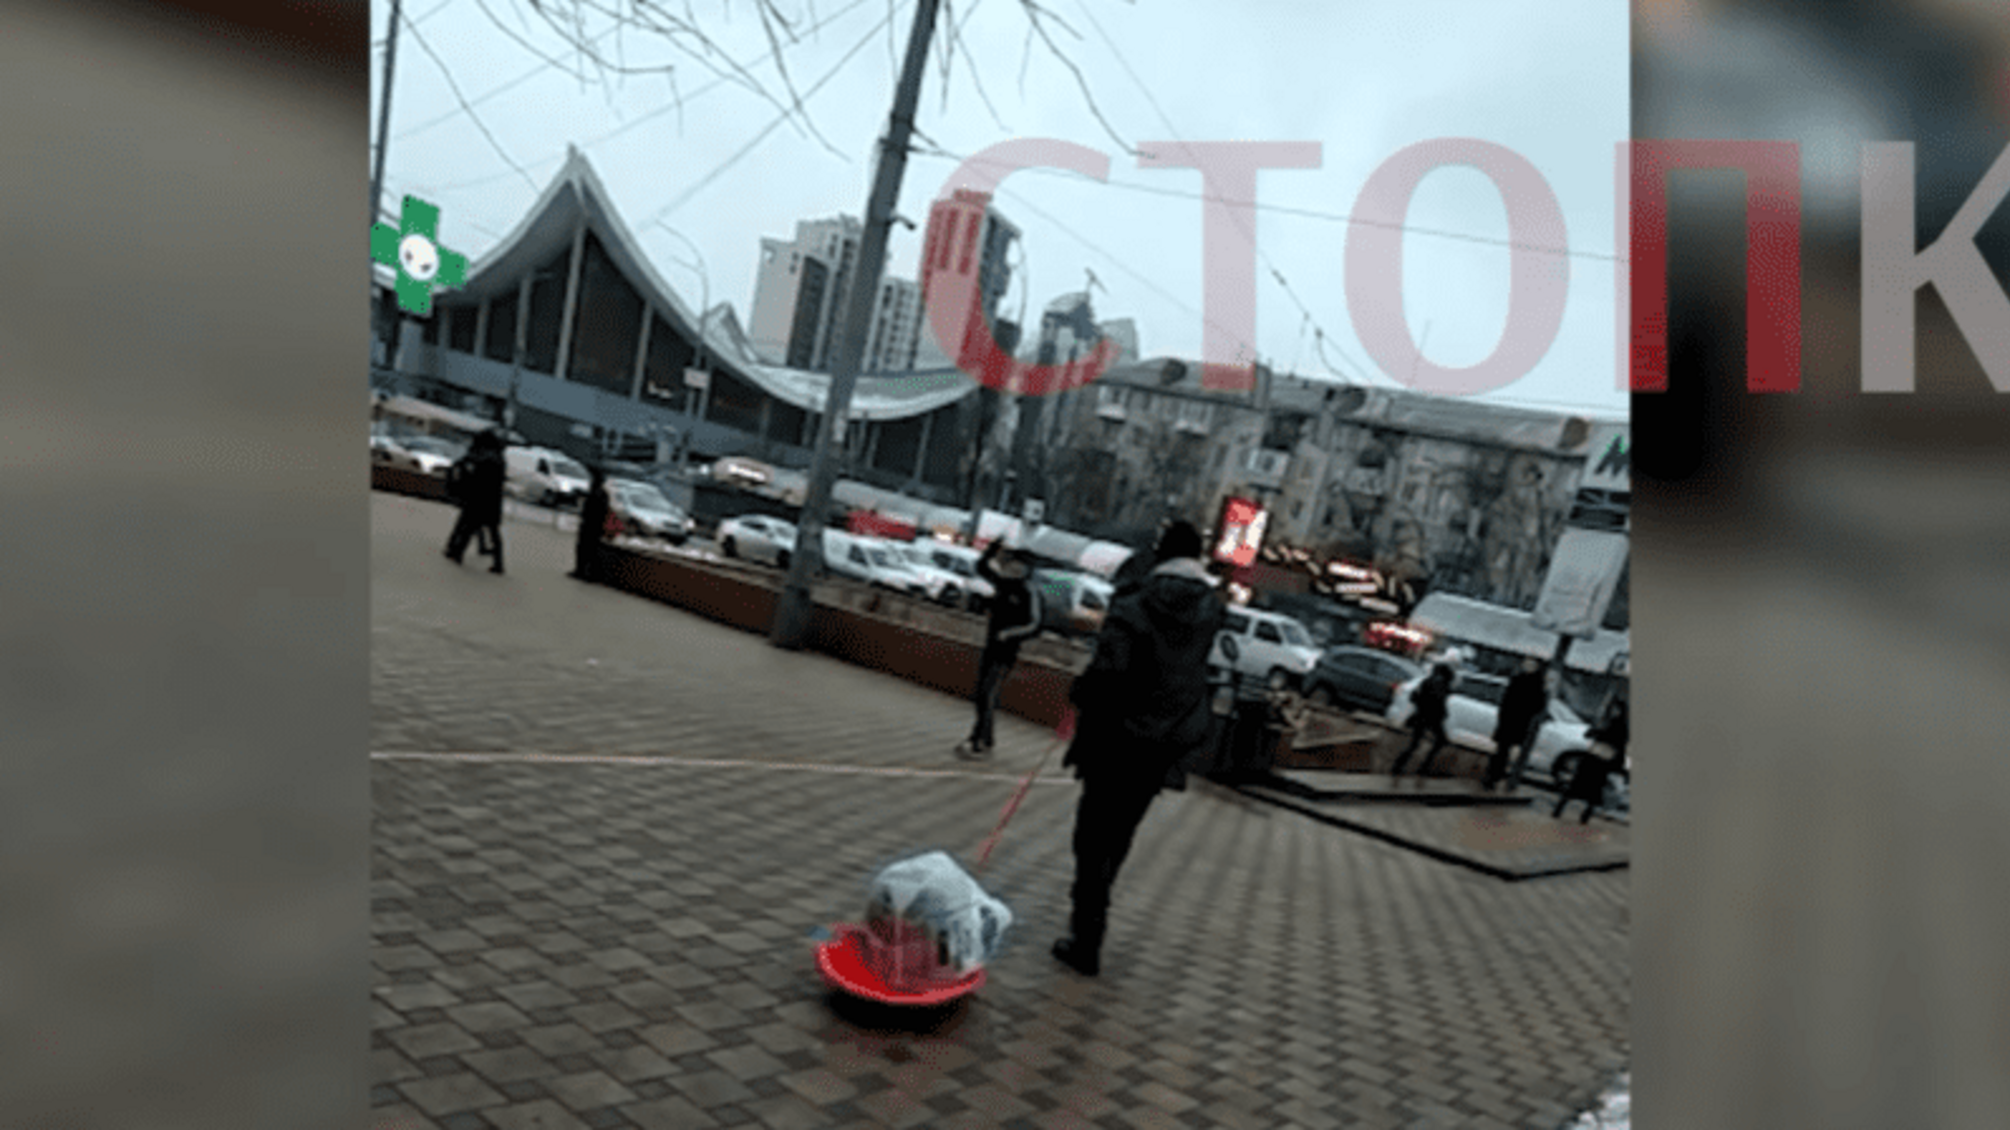 Размахивал ножами и агрессивно вел себя: в центре Киева задержали неадекватного мужчину (фото, видео)